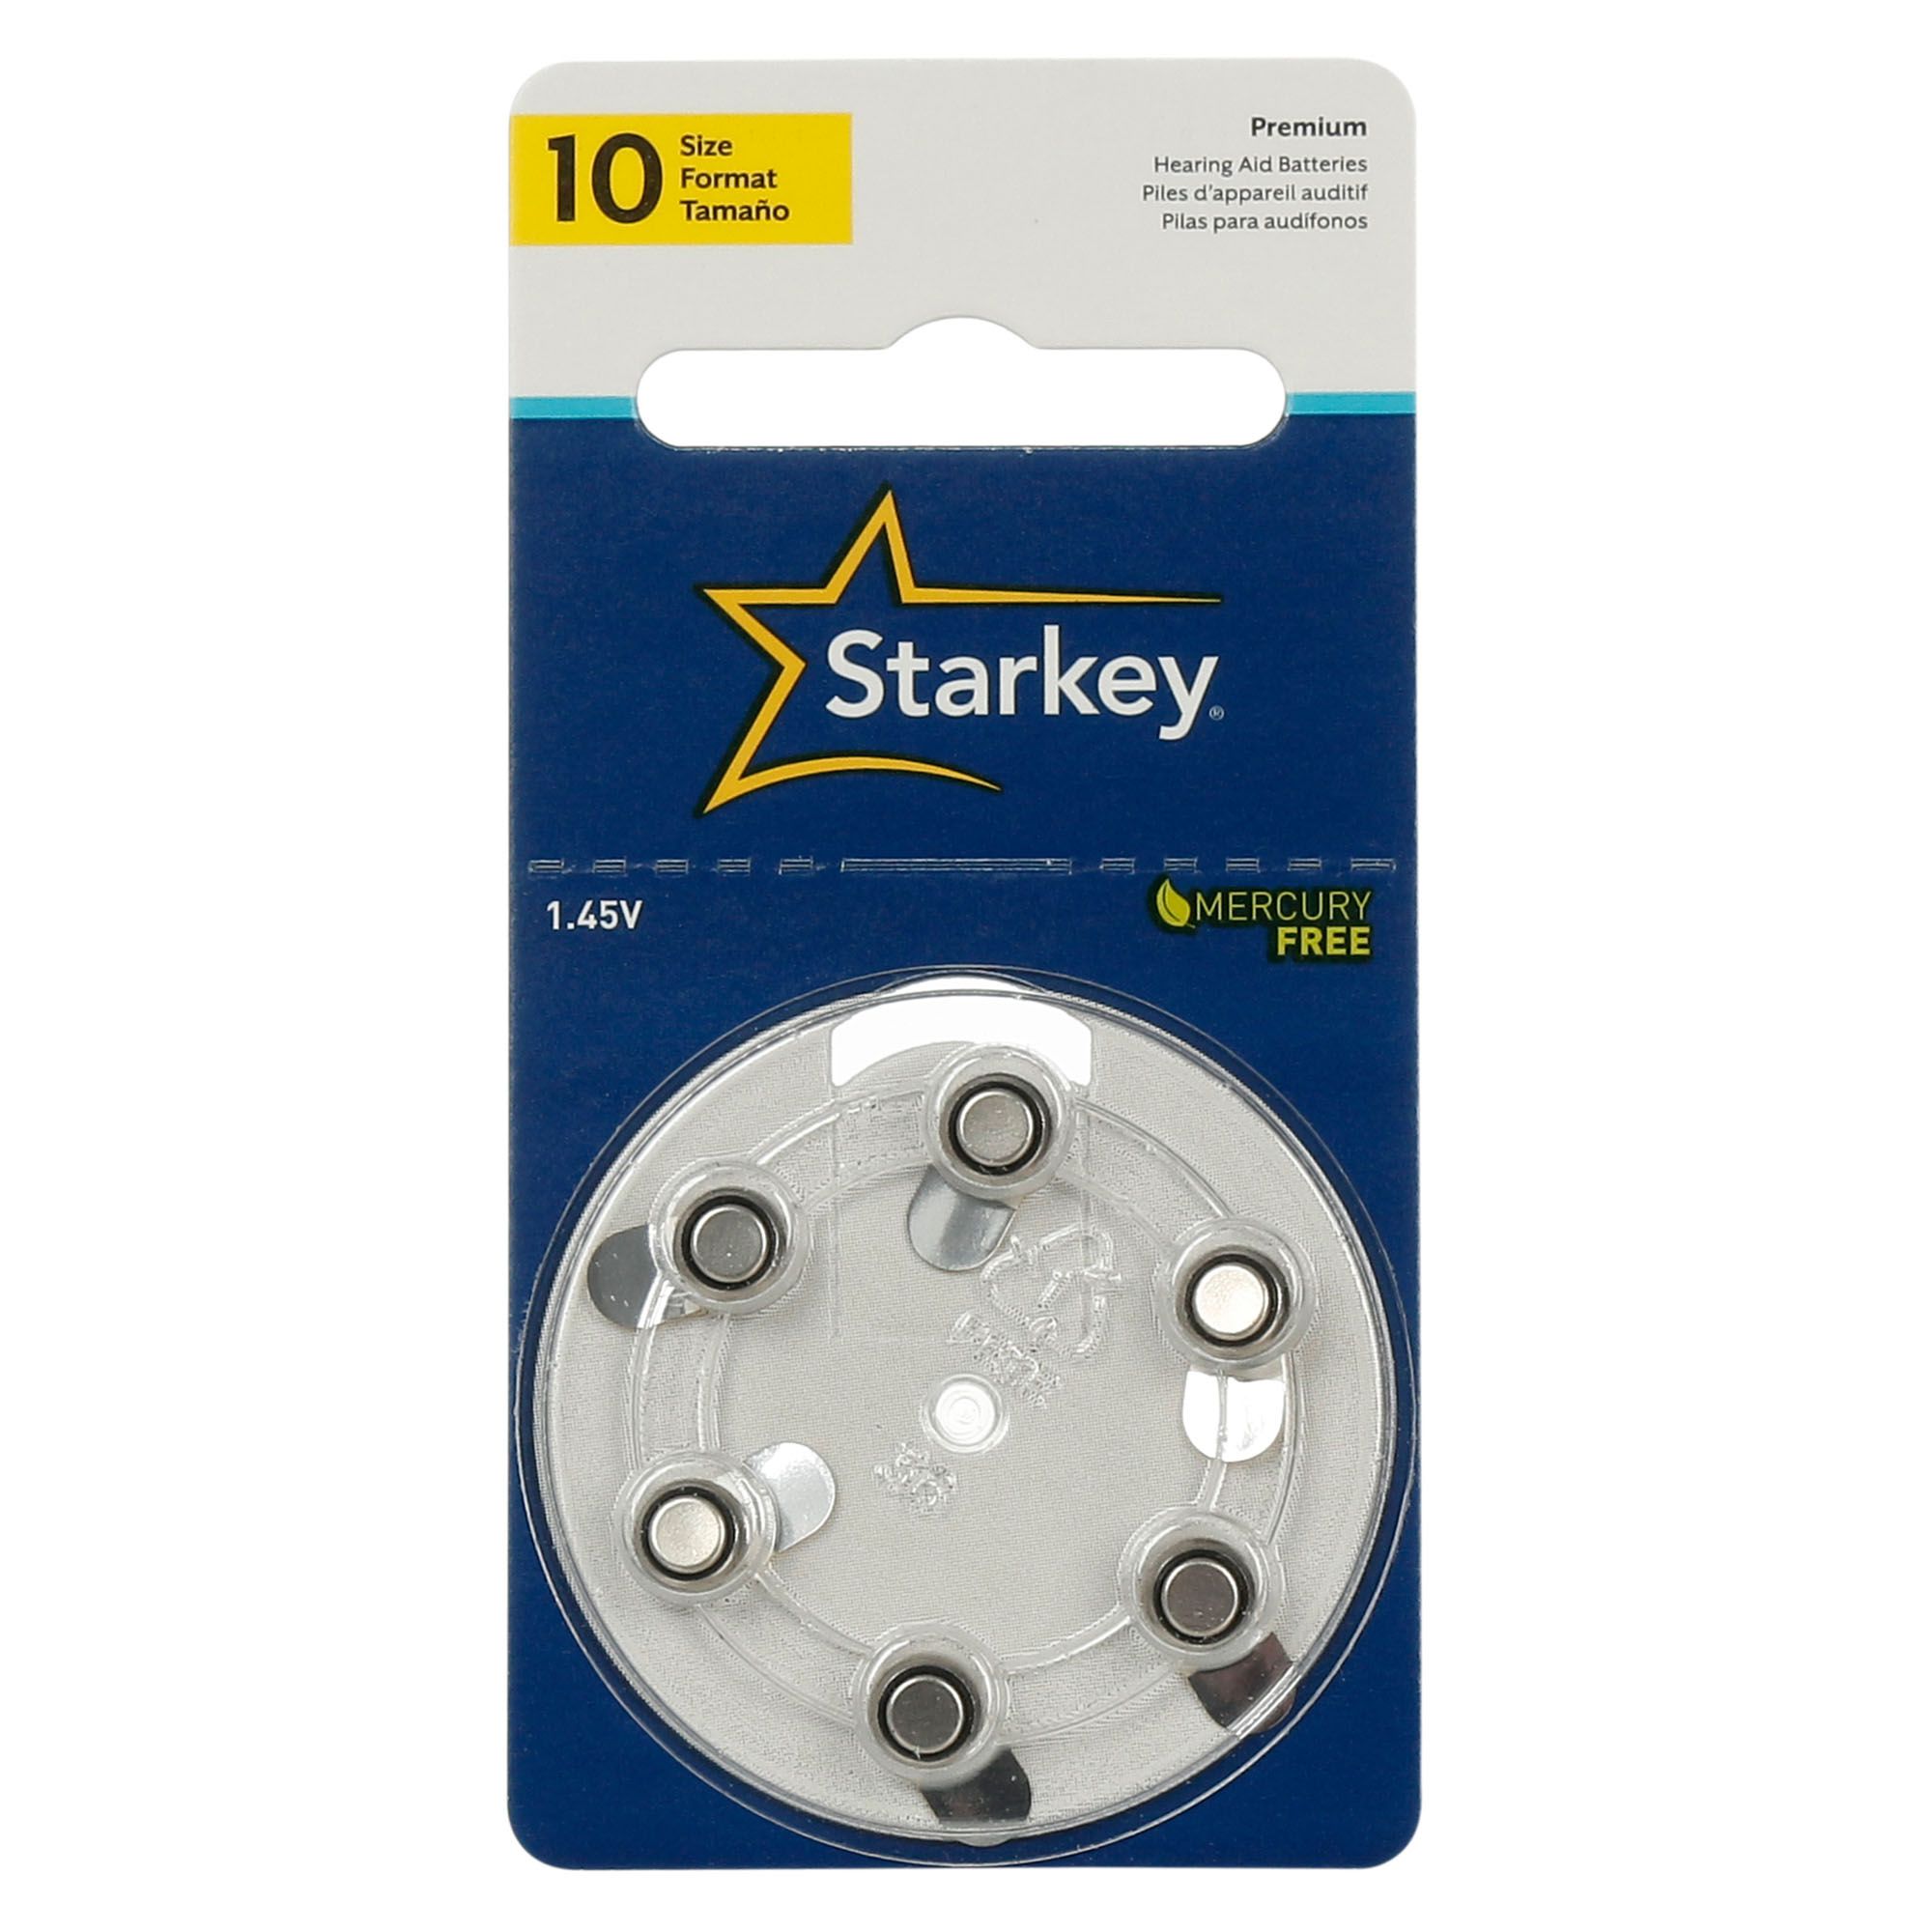 Starkey S10 / PR70 - 10 Cartelas - 60 Baterias para Aparelho Auditivo - SONORA